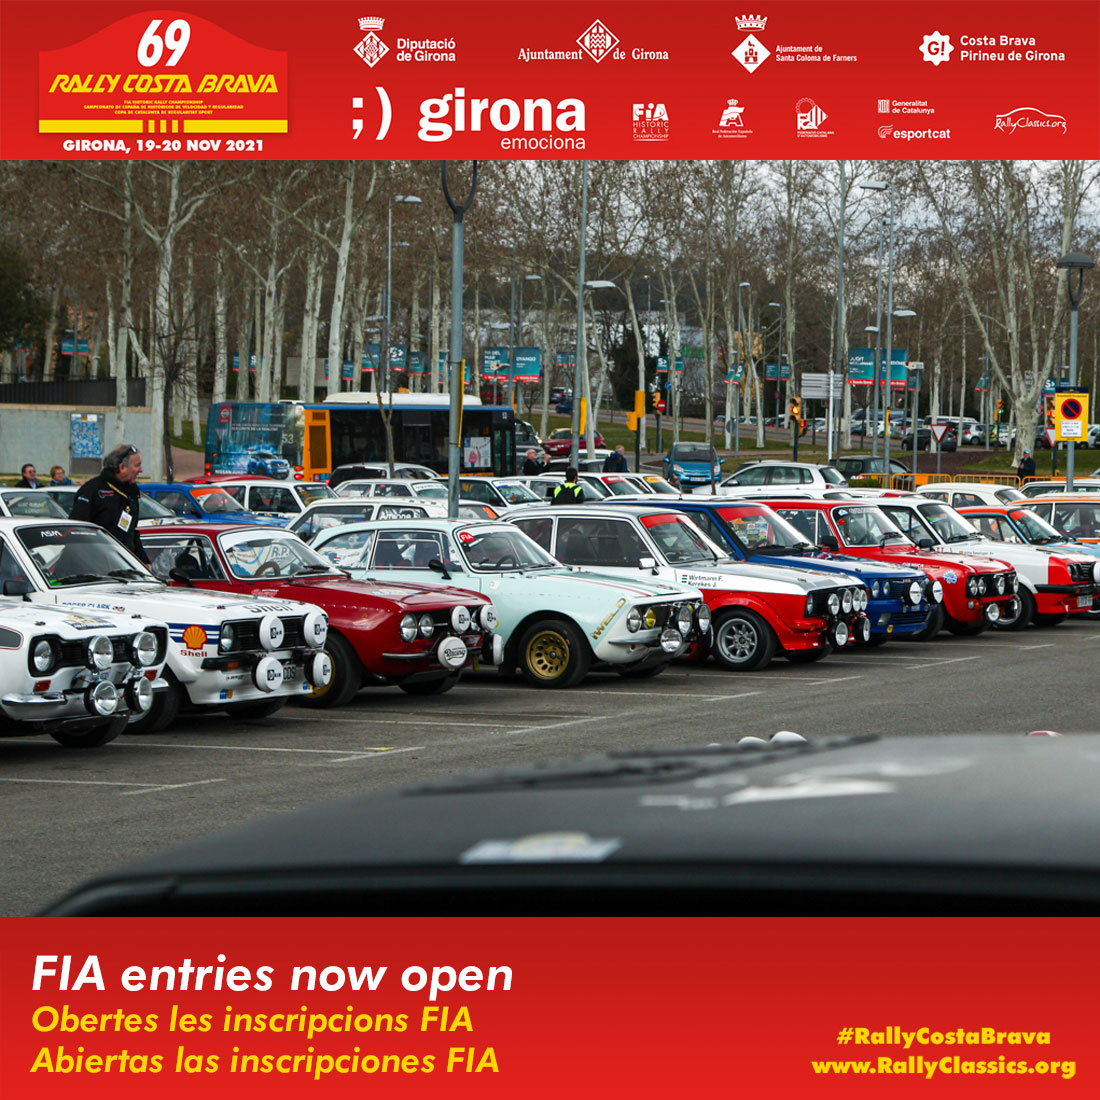 69 Rally Costa Brava Inscripciones FIA abiertas